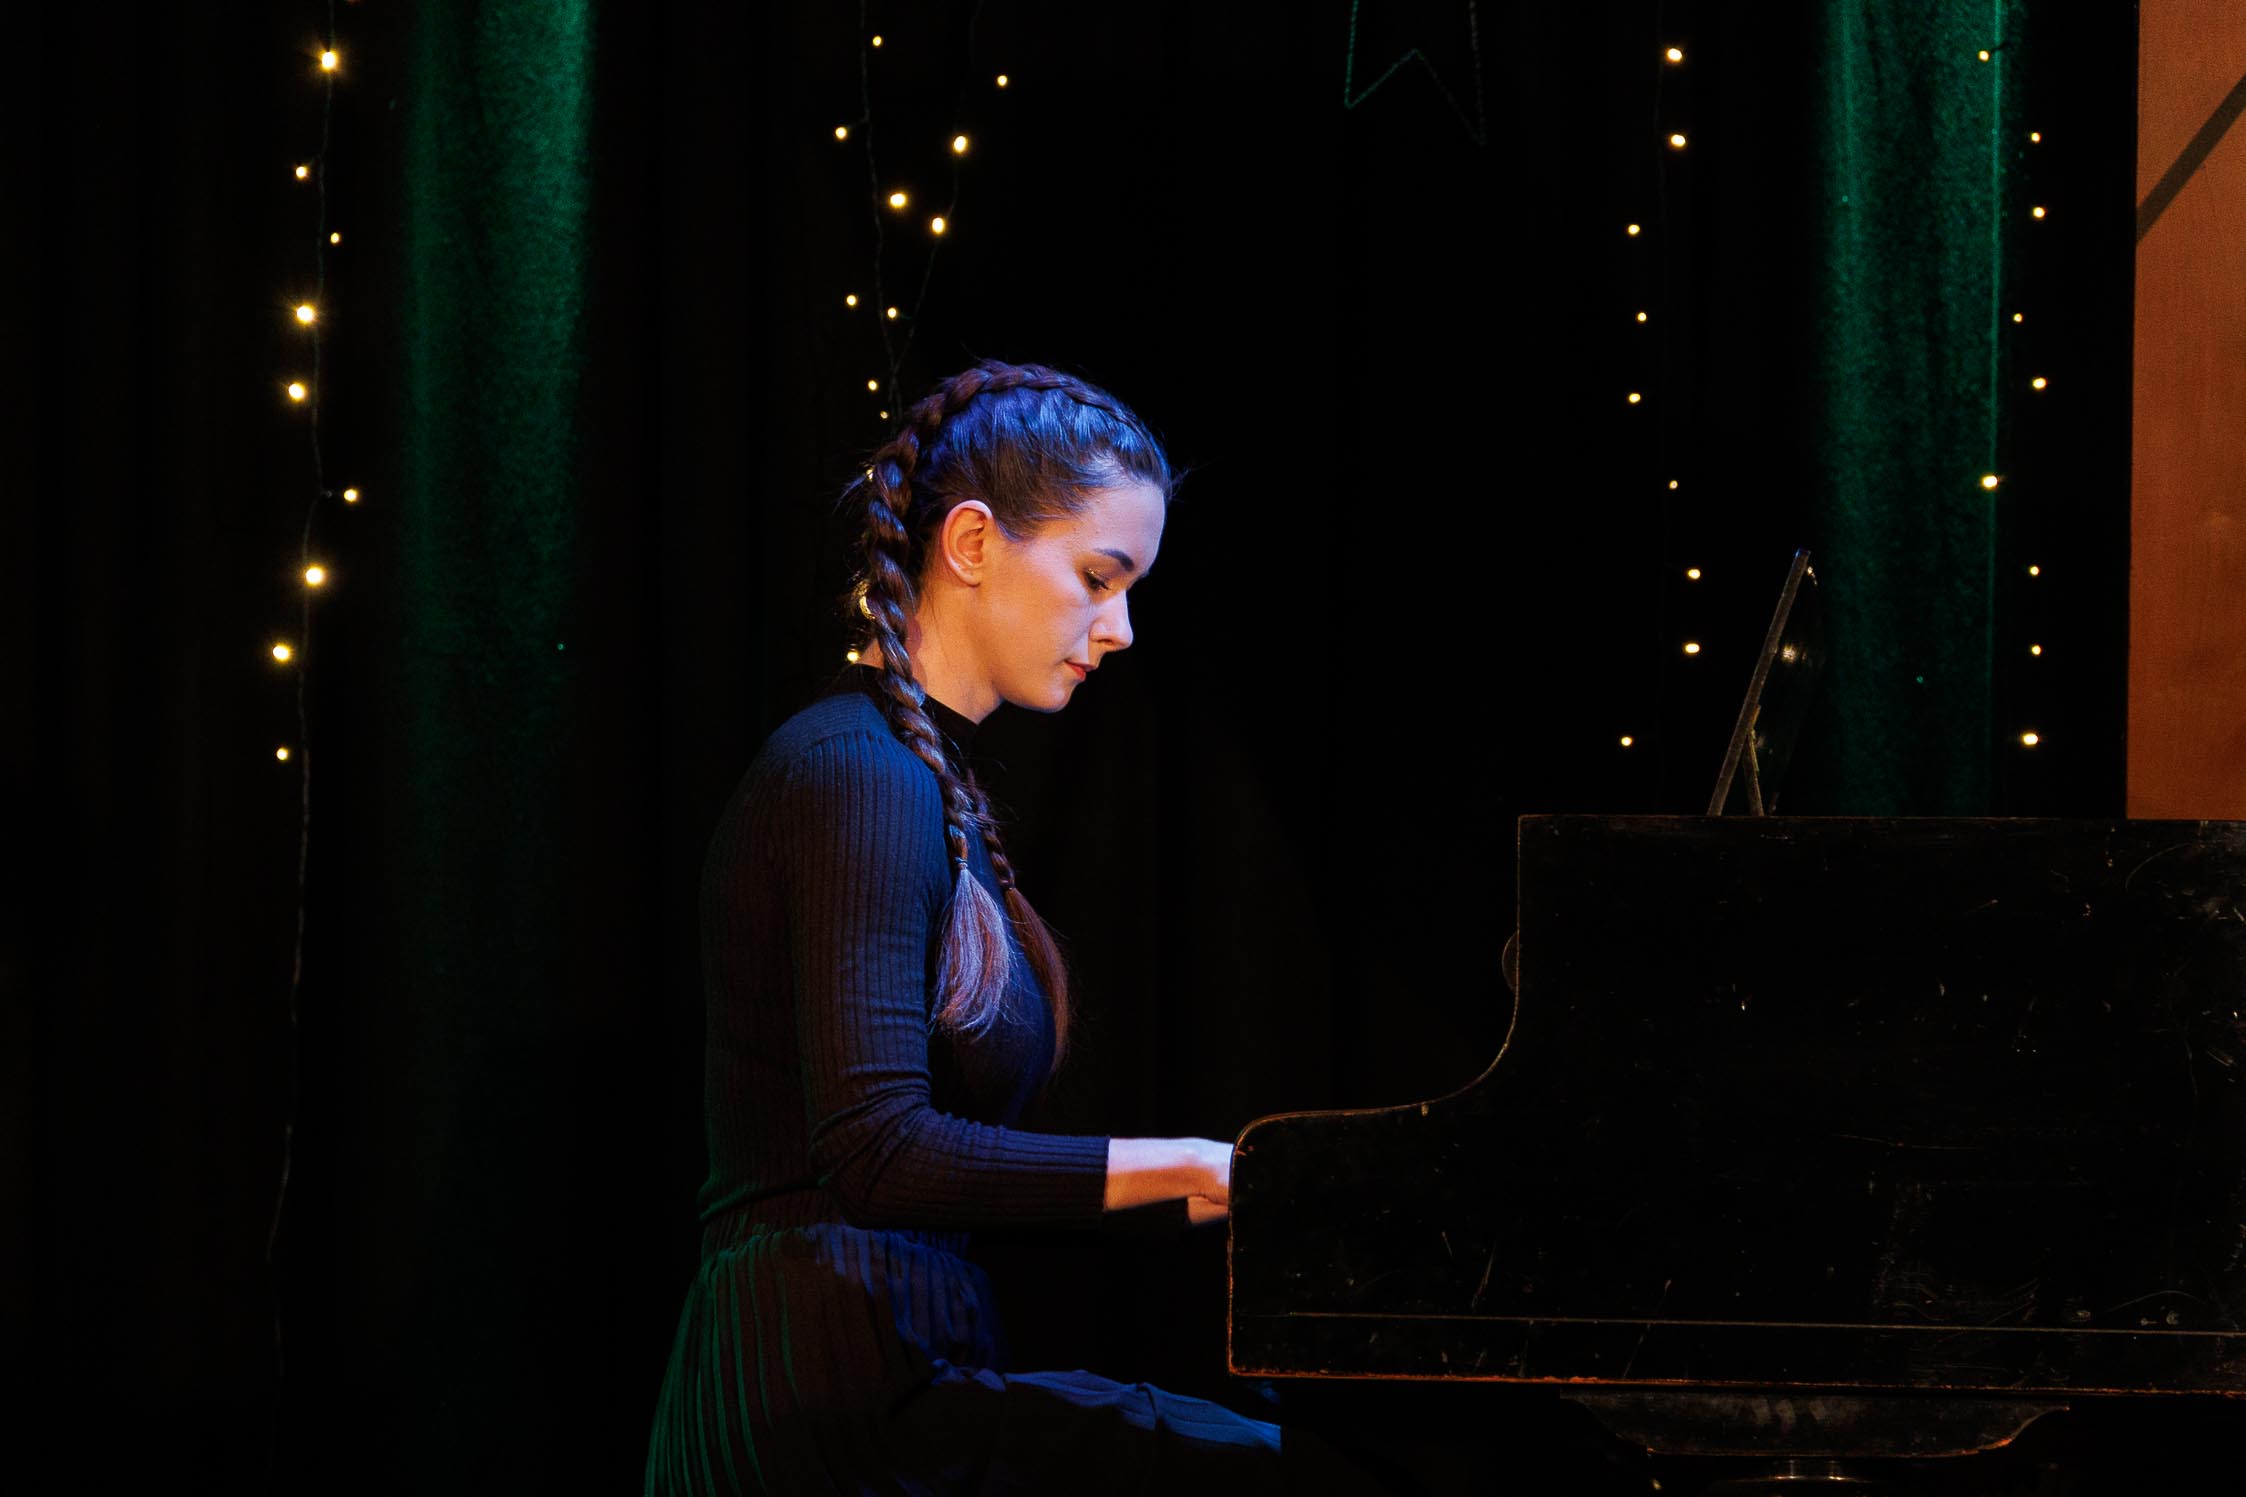 dziewczyna gra na fortepianie, kolorowa scena, widać skupienie na twarzy i jej dłonie na klawiaturze